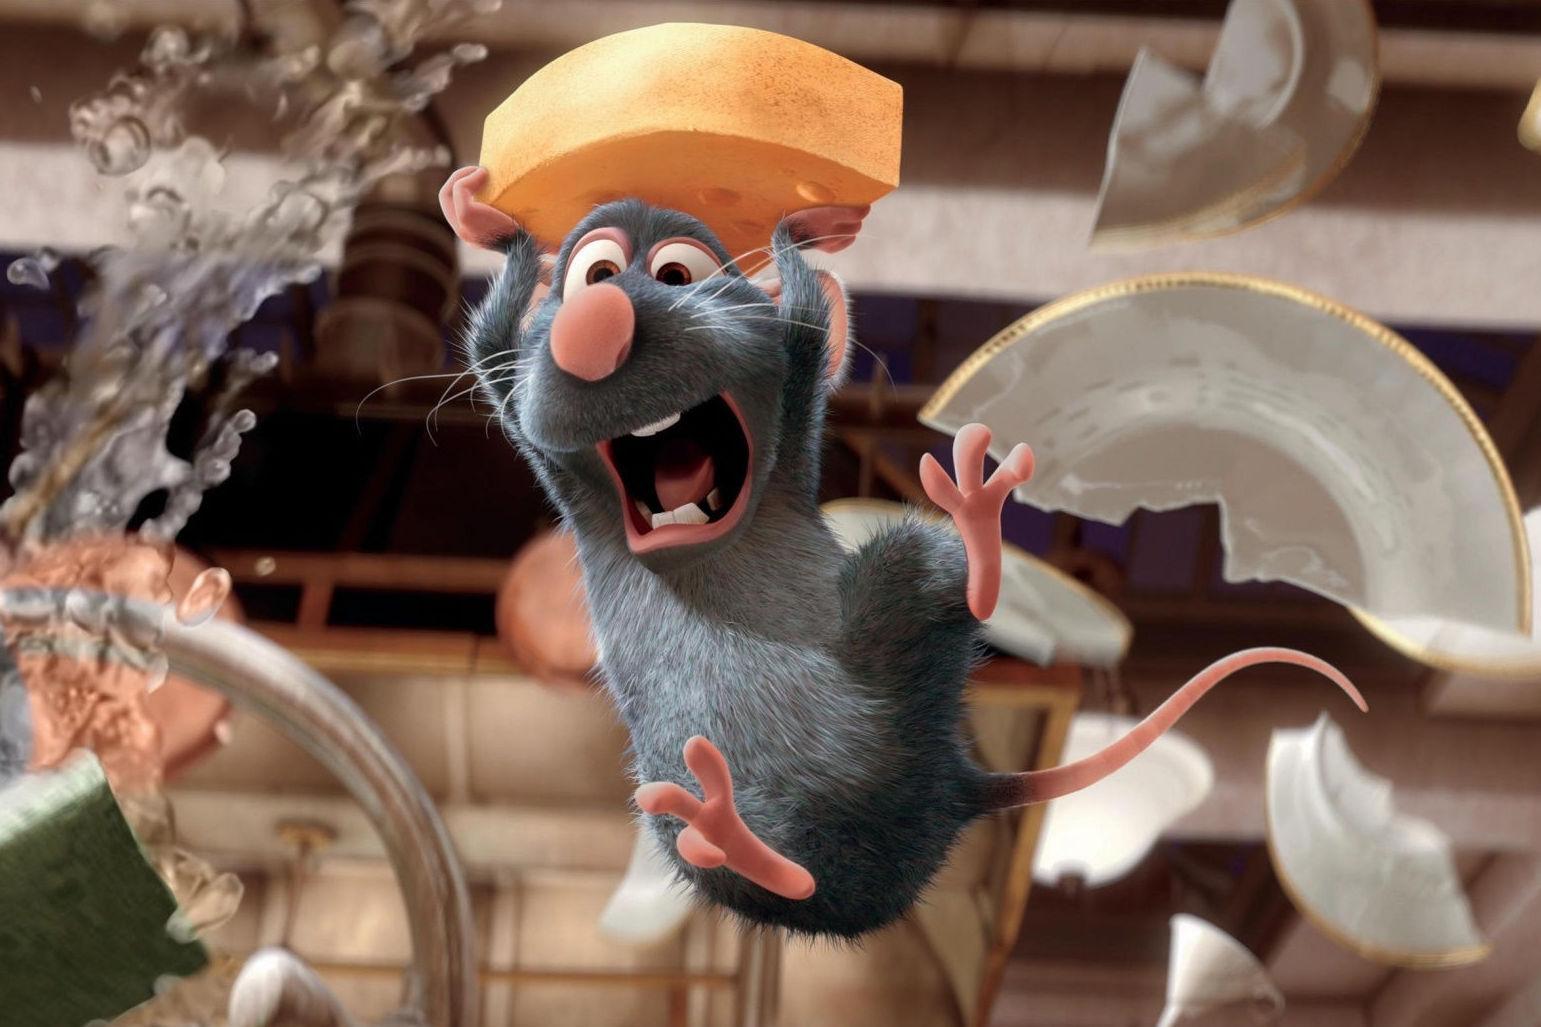 KJØKKENROTTE: Den animerte filmen om rotten Remy som vil bli kokk er underholdende både for store og små. Foto: Pixar